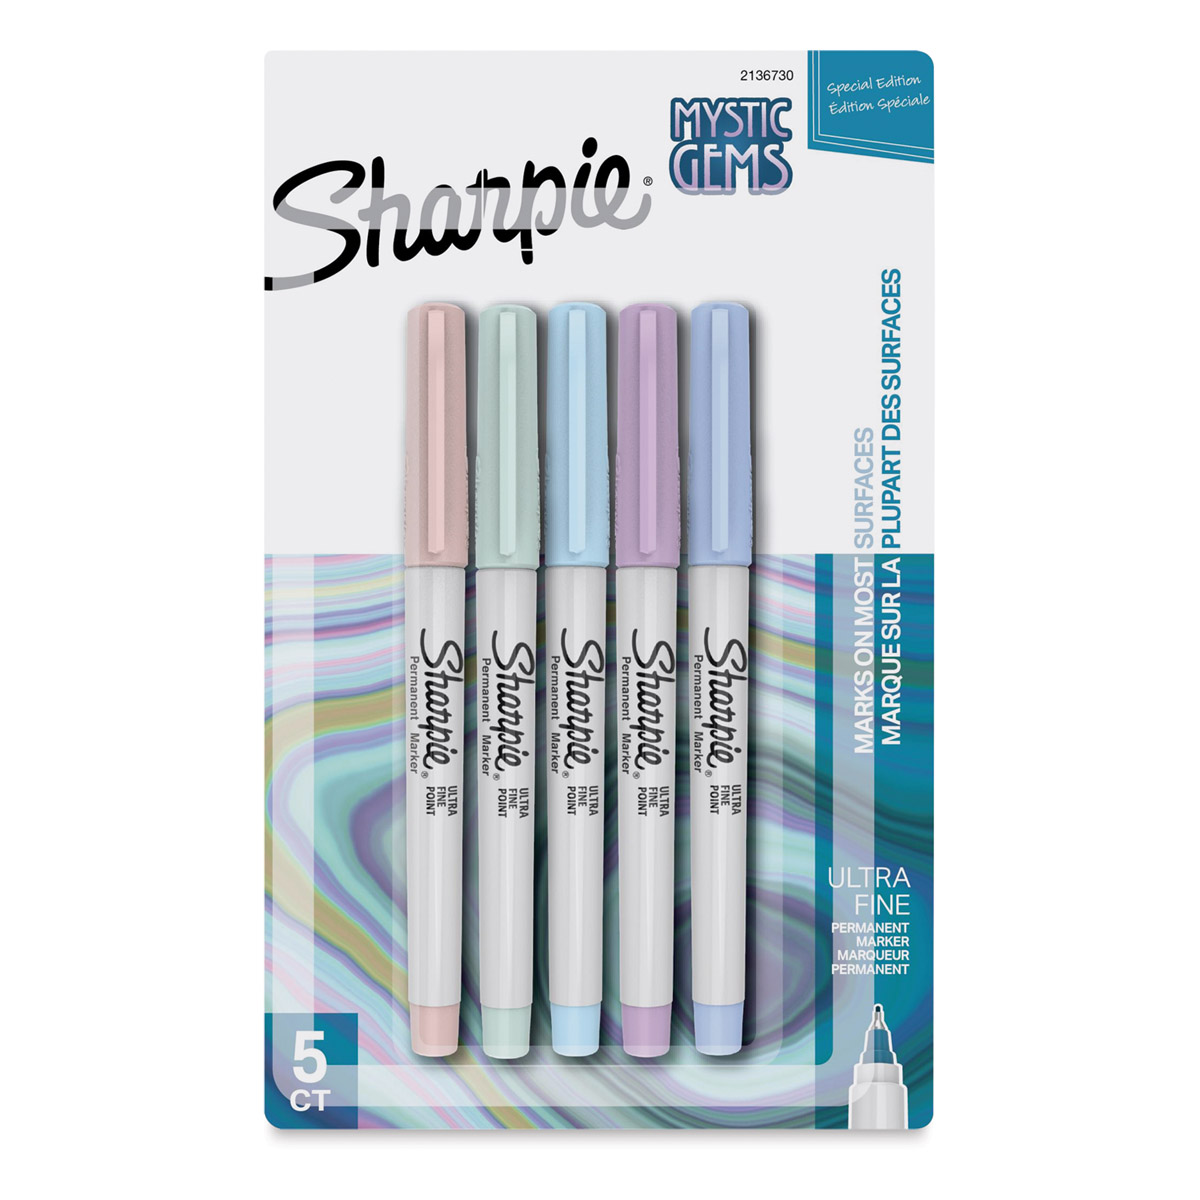 Sharpie Fine Point Permanent Markers - Mystic Gem Colors, Set of 12